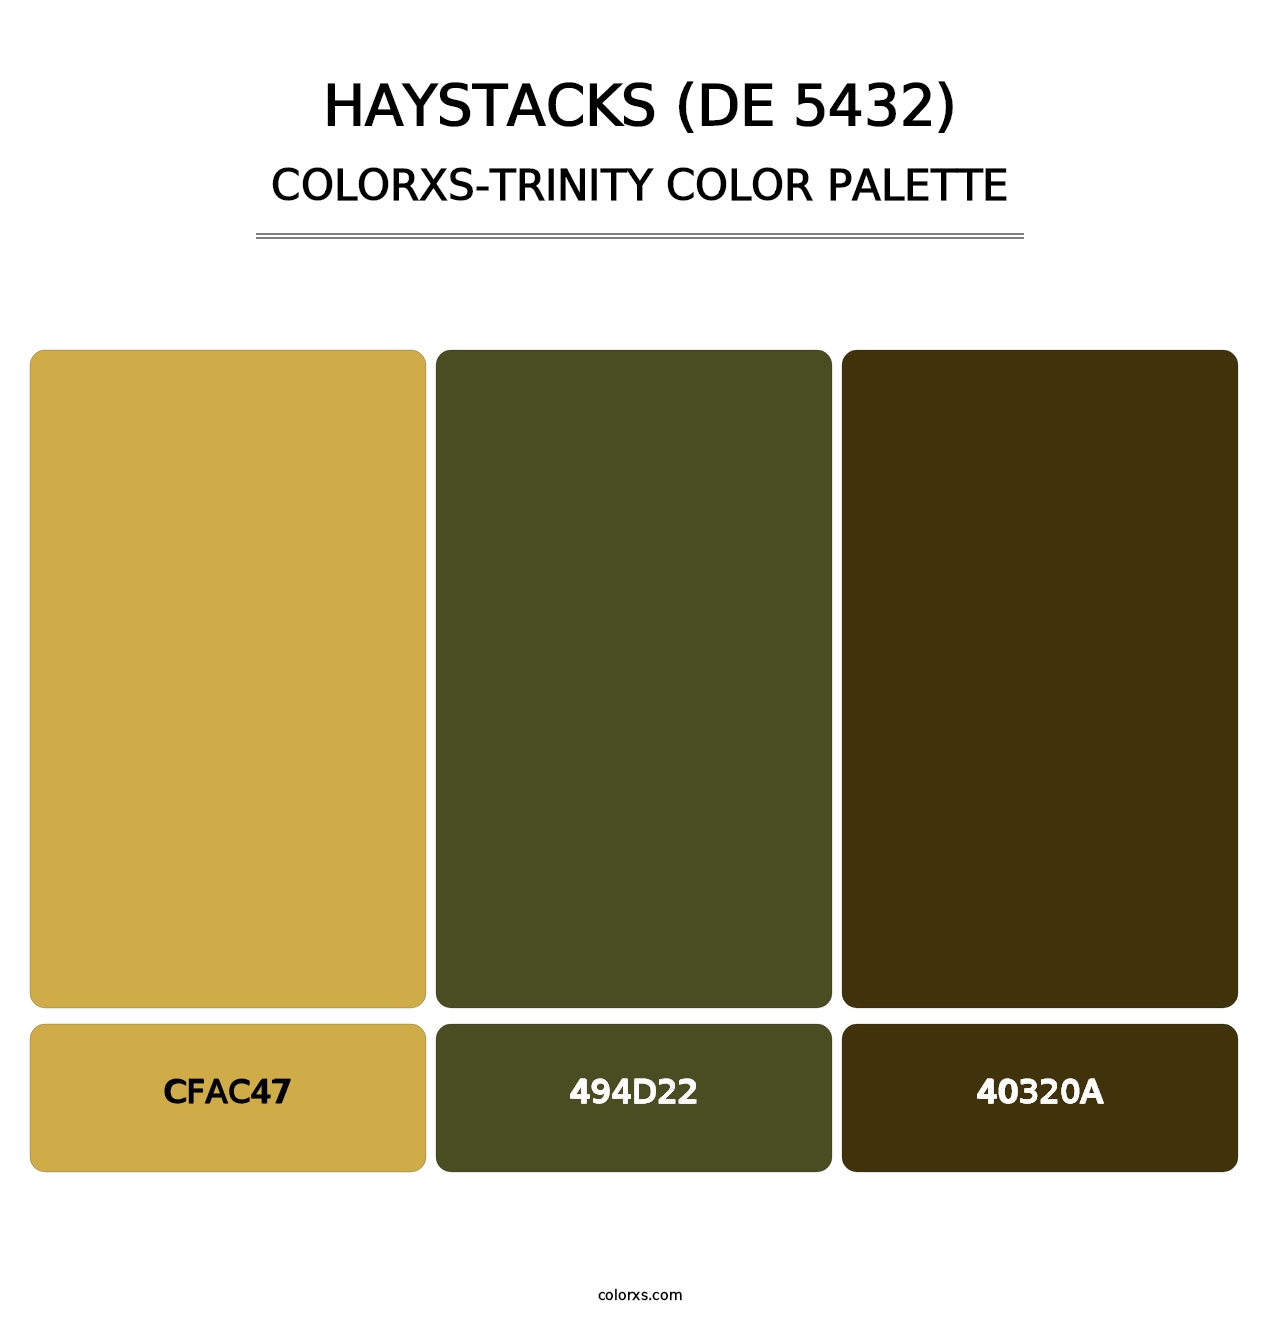 Haystacks (DE 5432) - Colorxs Trinity Palette